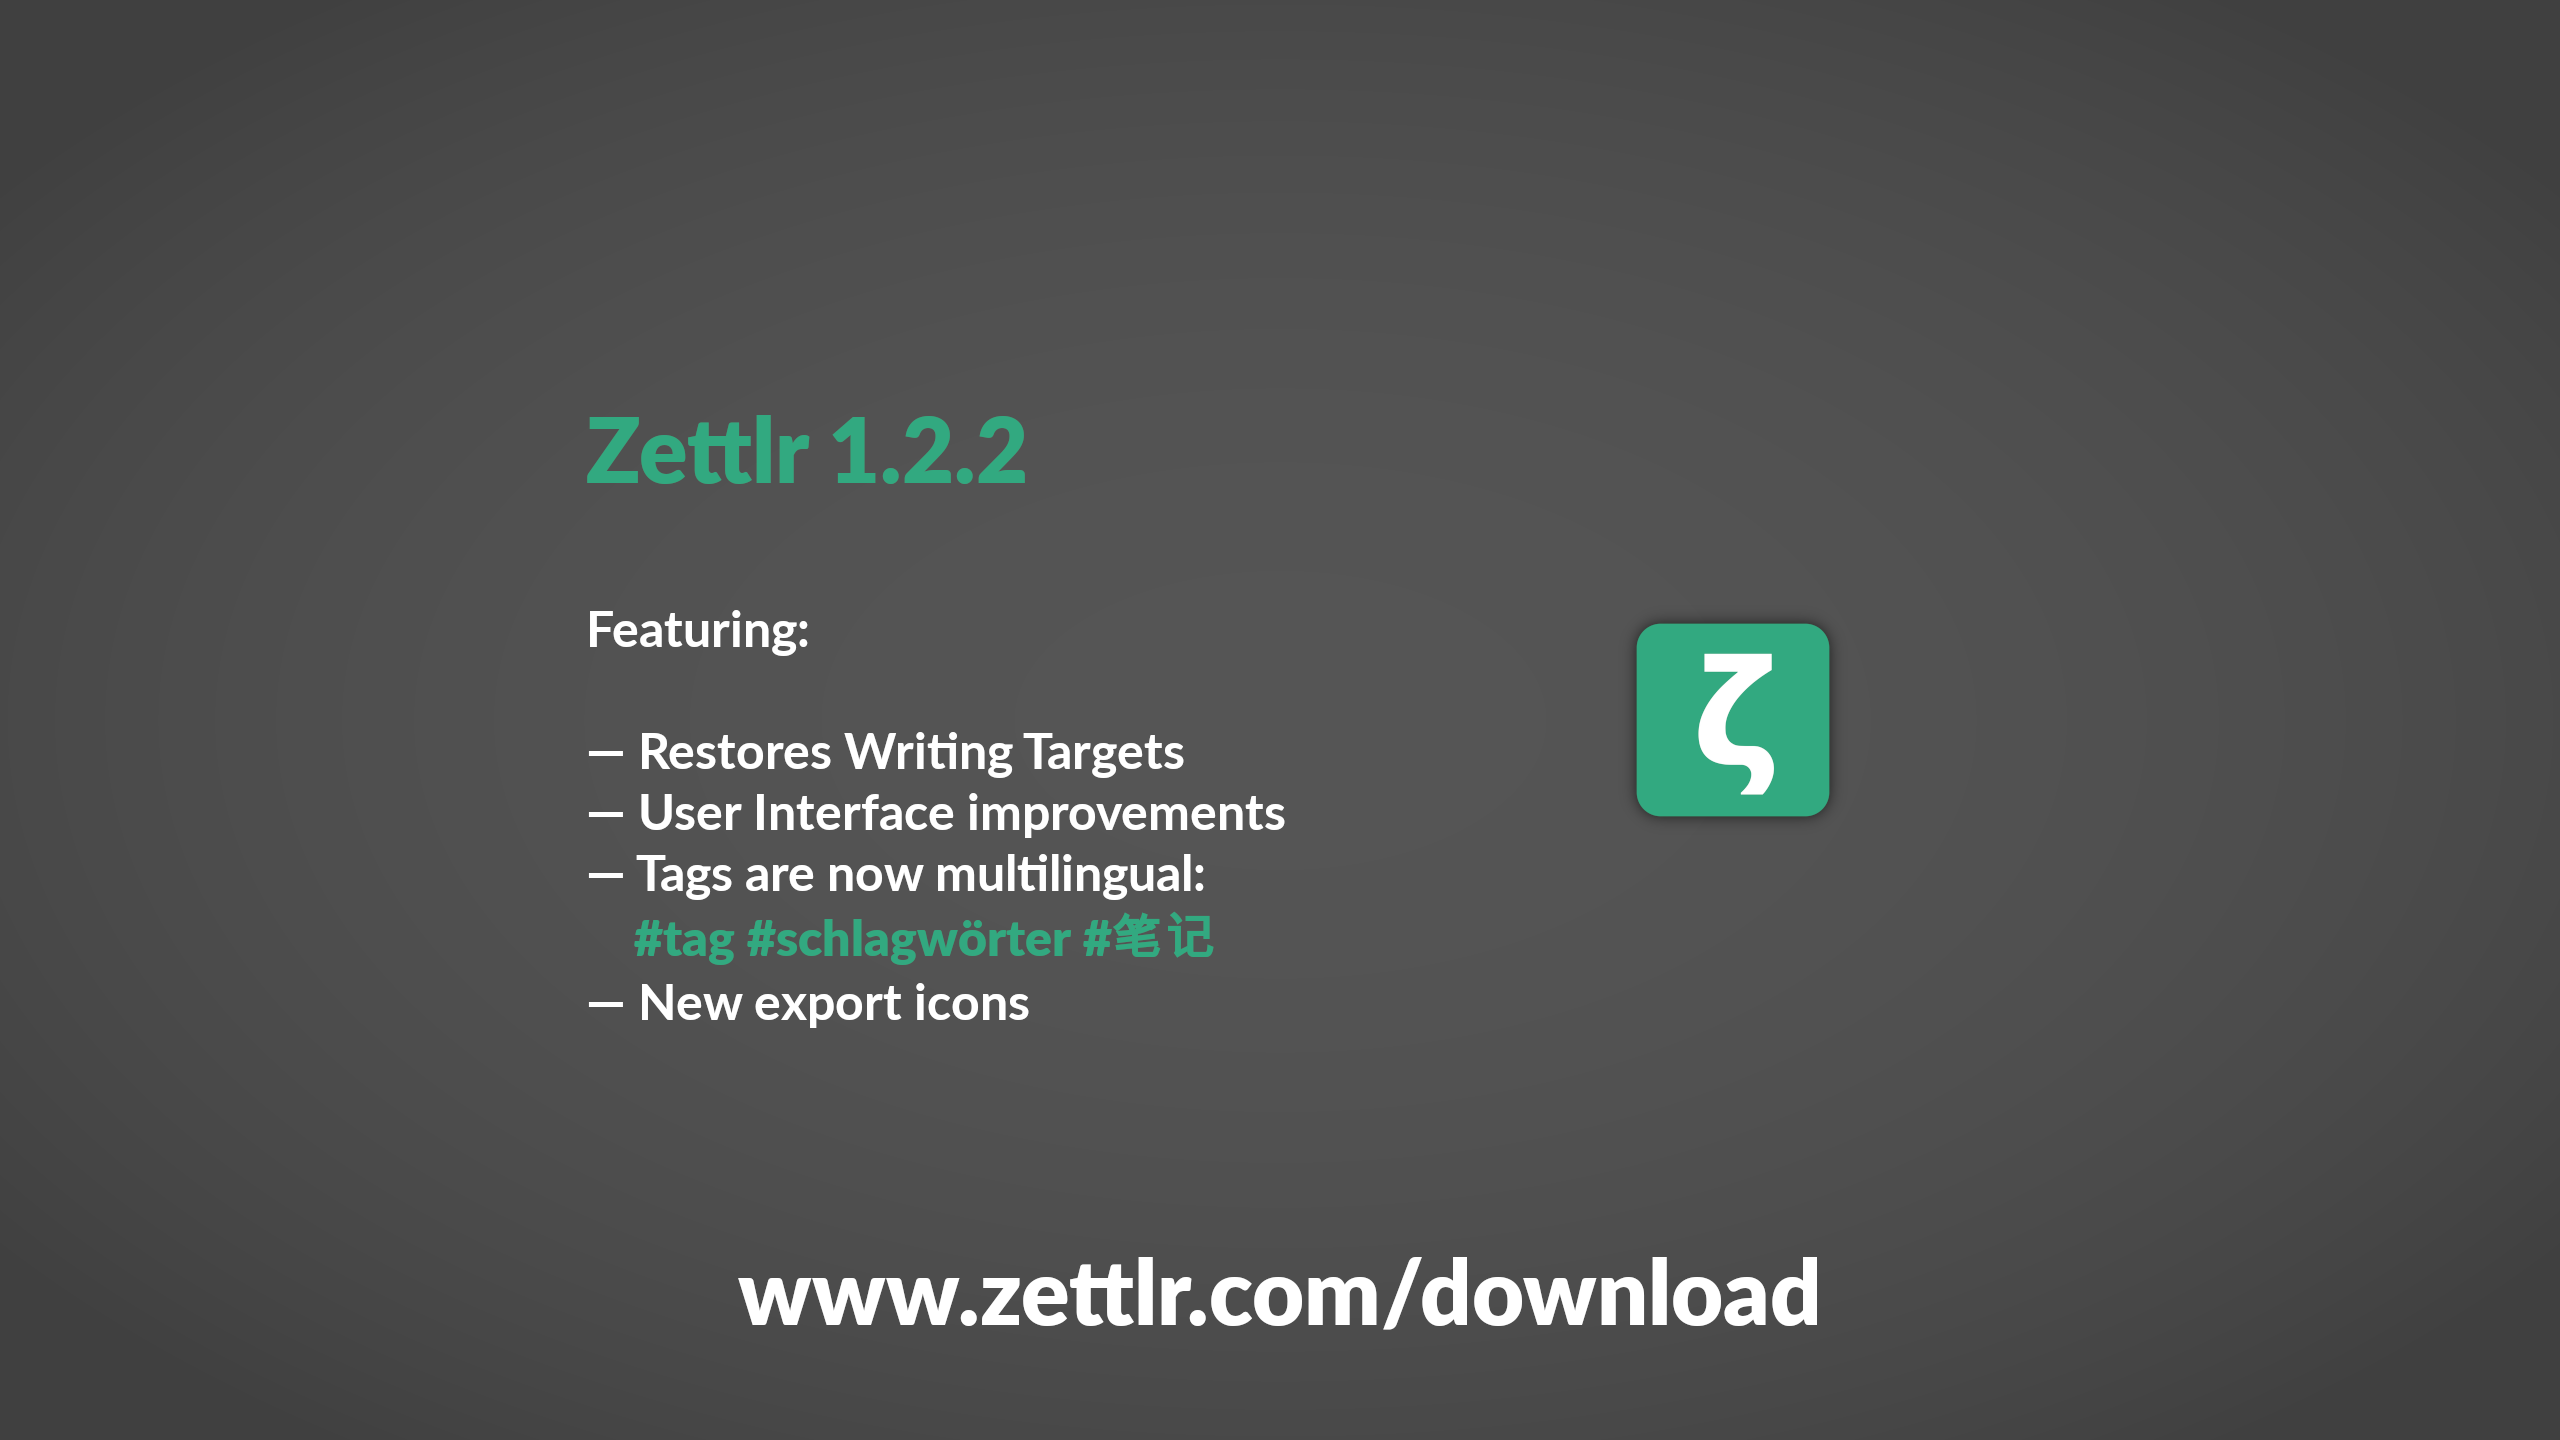 Zettlr 1.2.2 Released